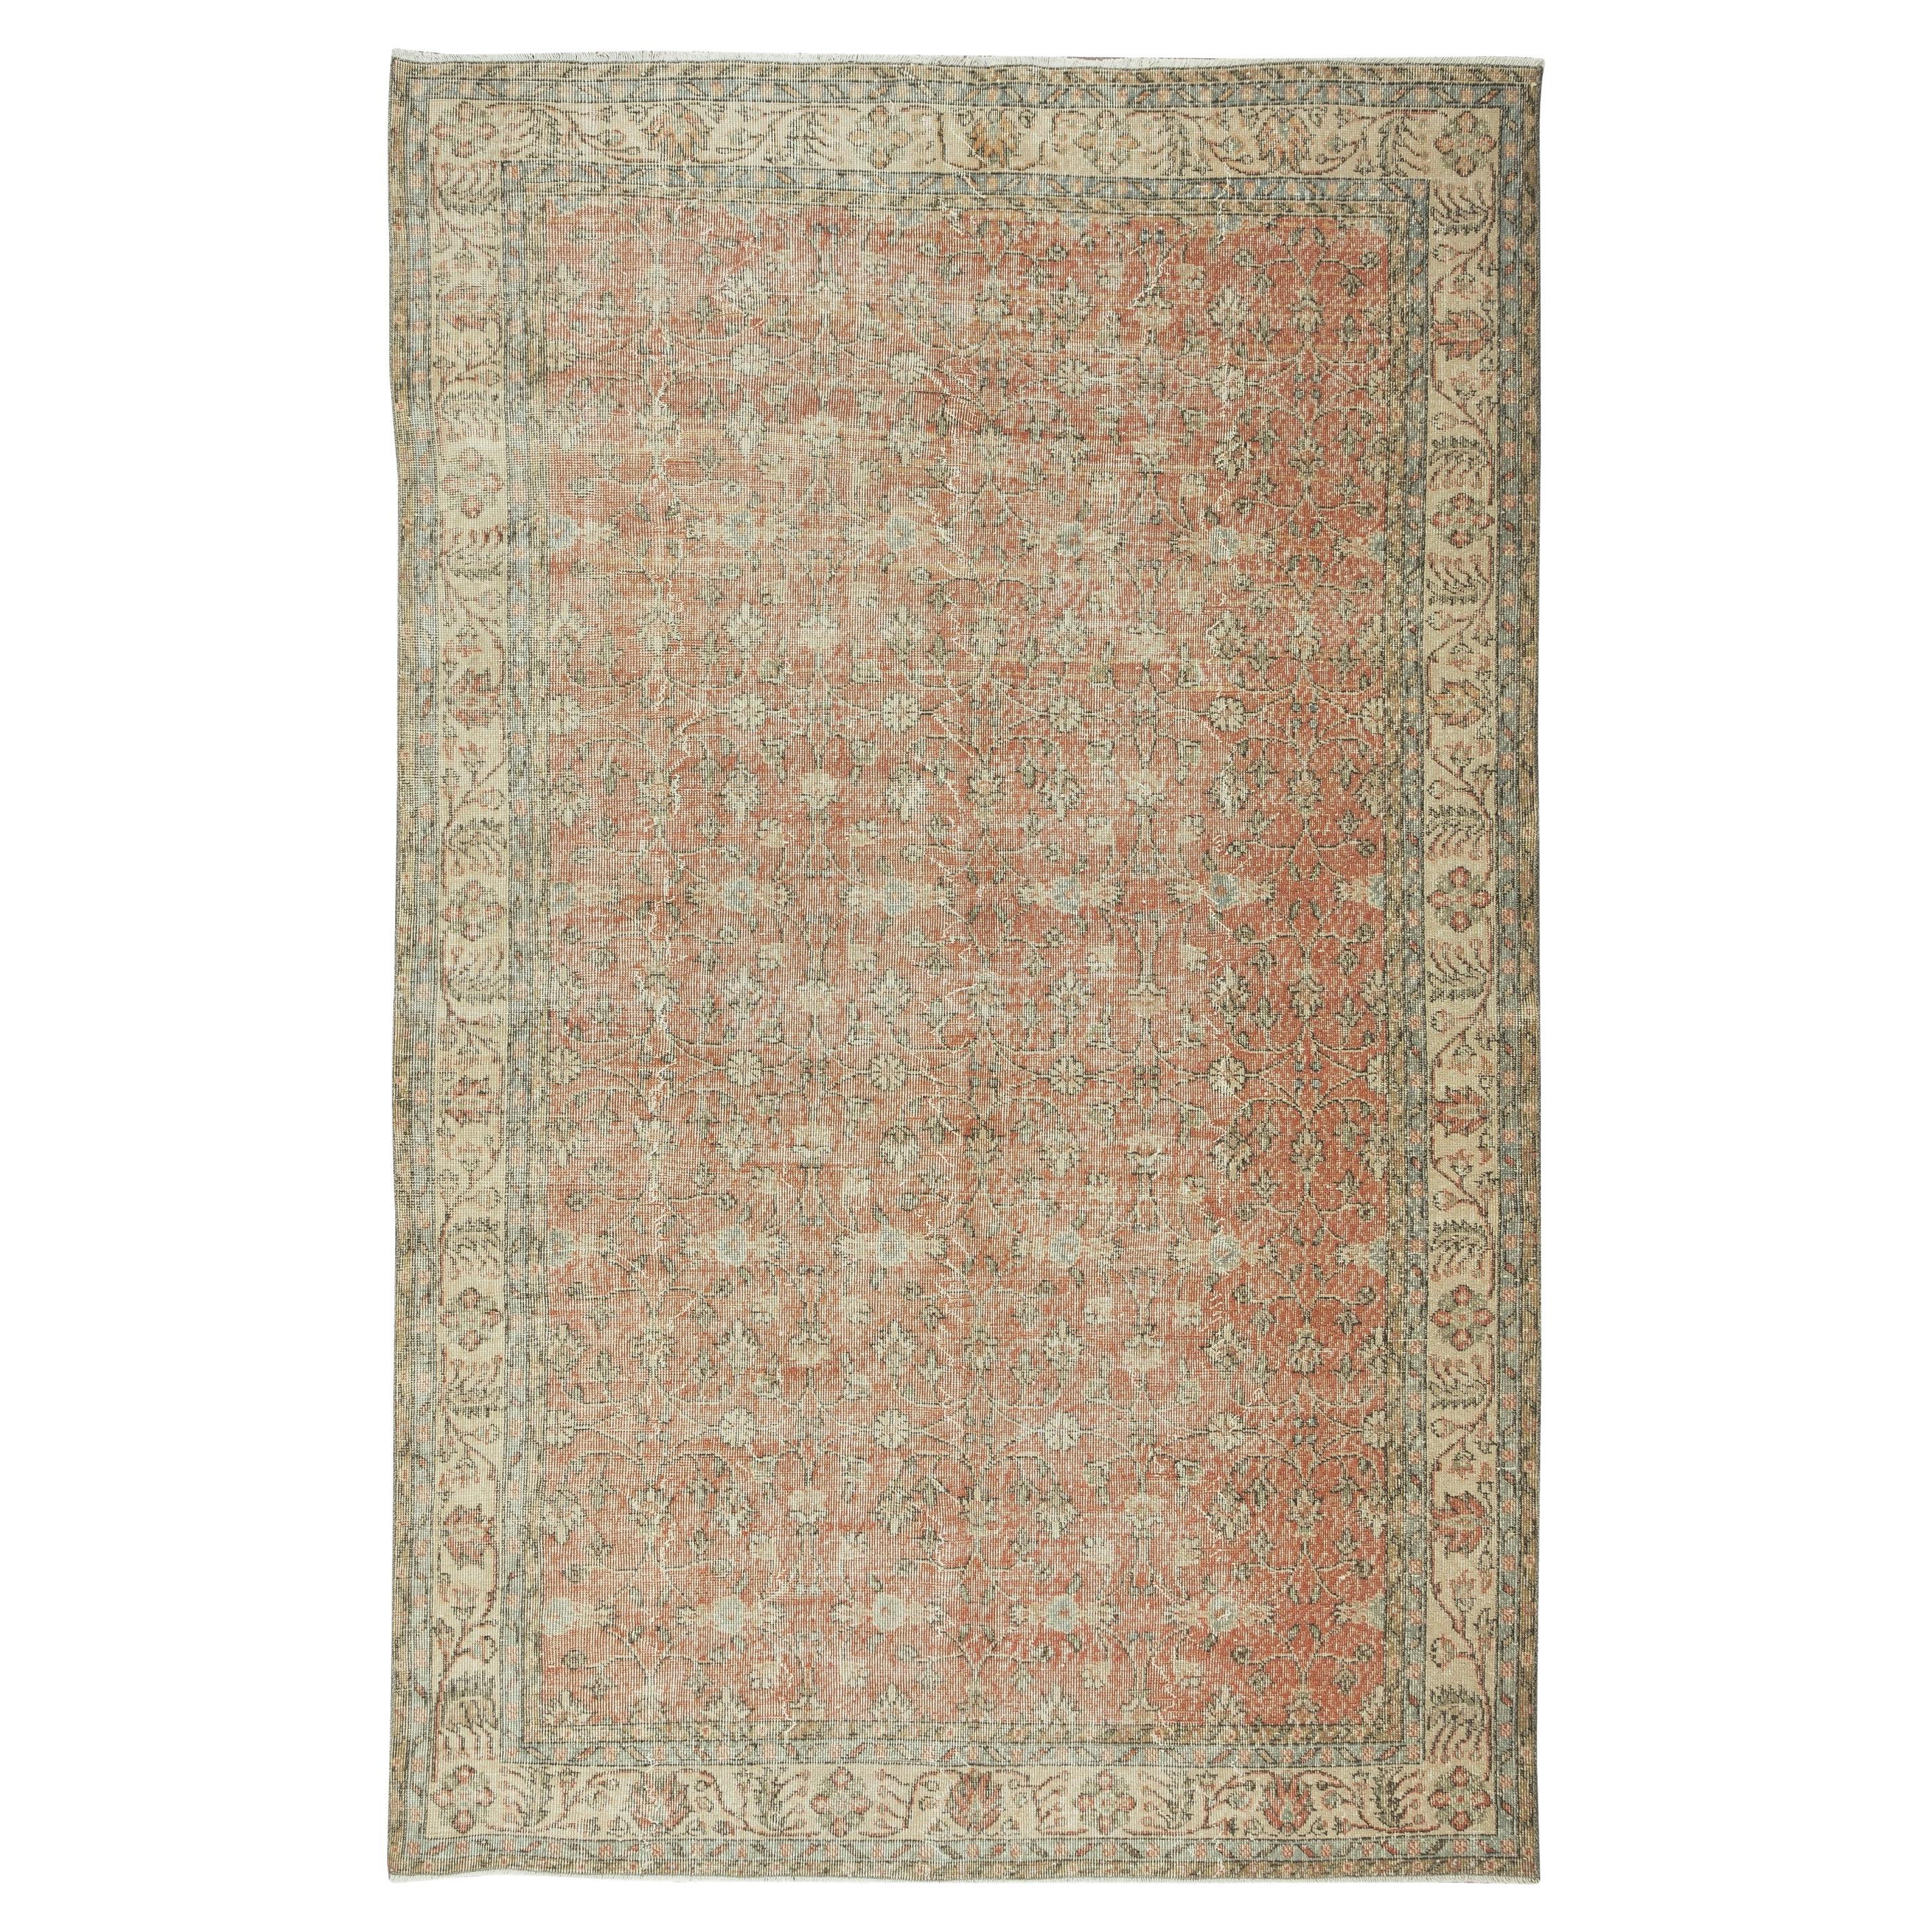 6.6x10,5 Ft Handgeknüpfter, geblümter türkischer Vintage-Teppich aus Wolle und Baumwolle